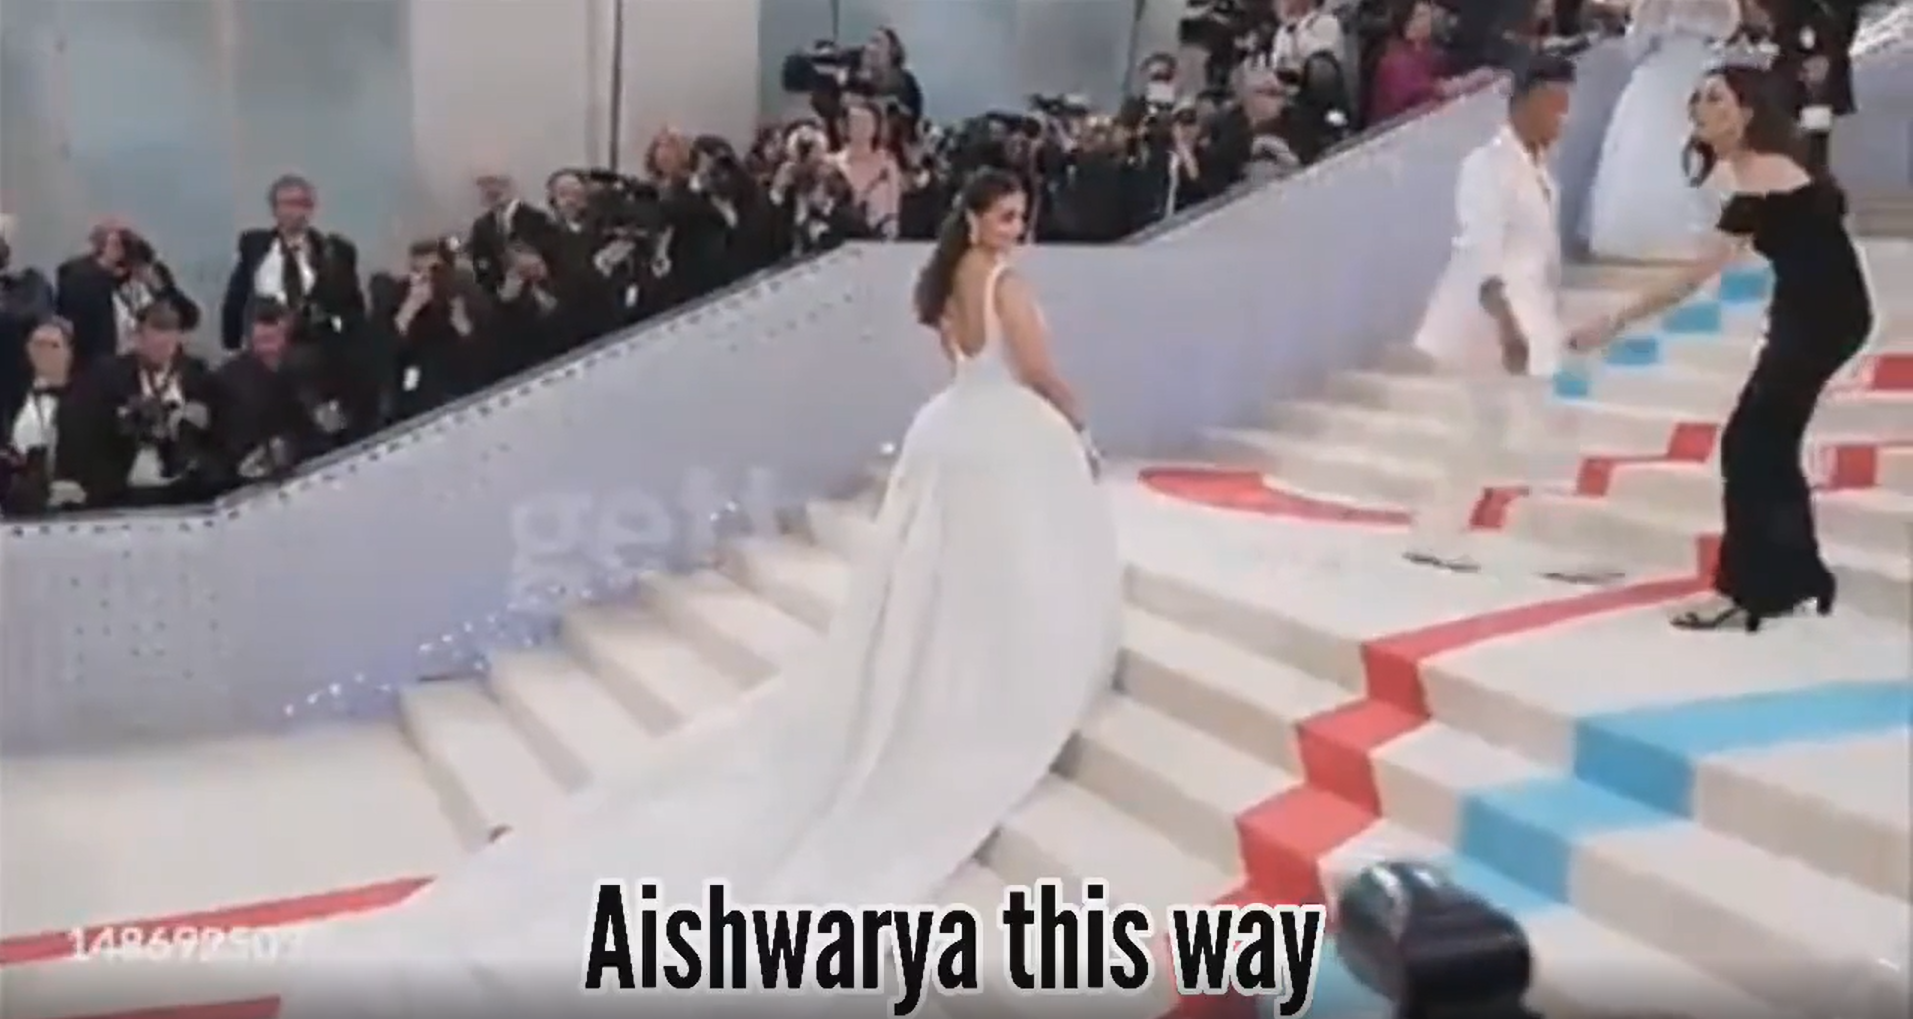 Western Media calling her Aishwarya Rai